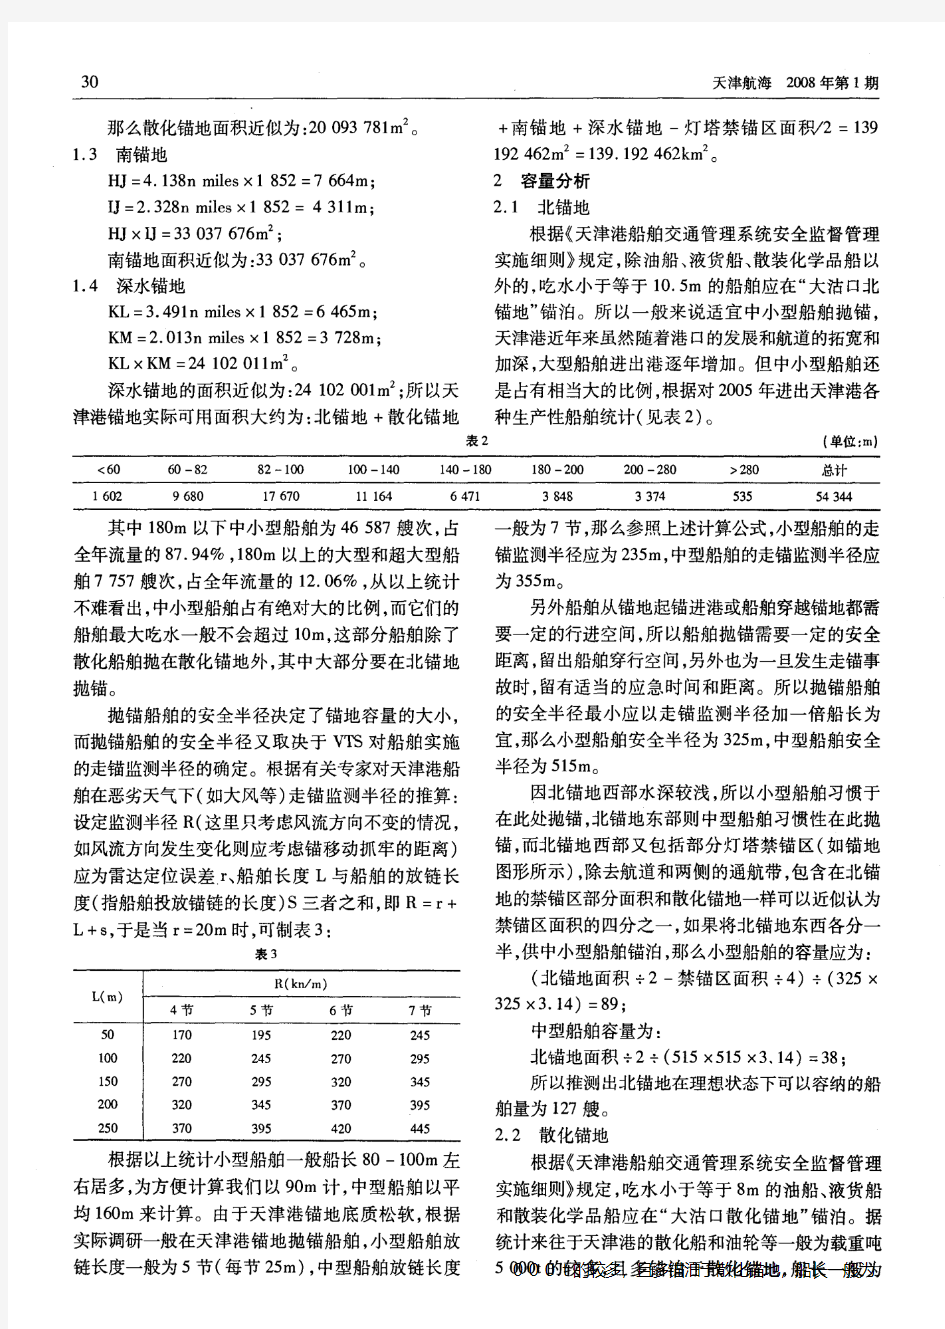 天津港锚地船舶容量分析